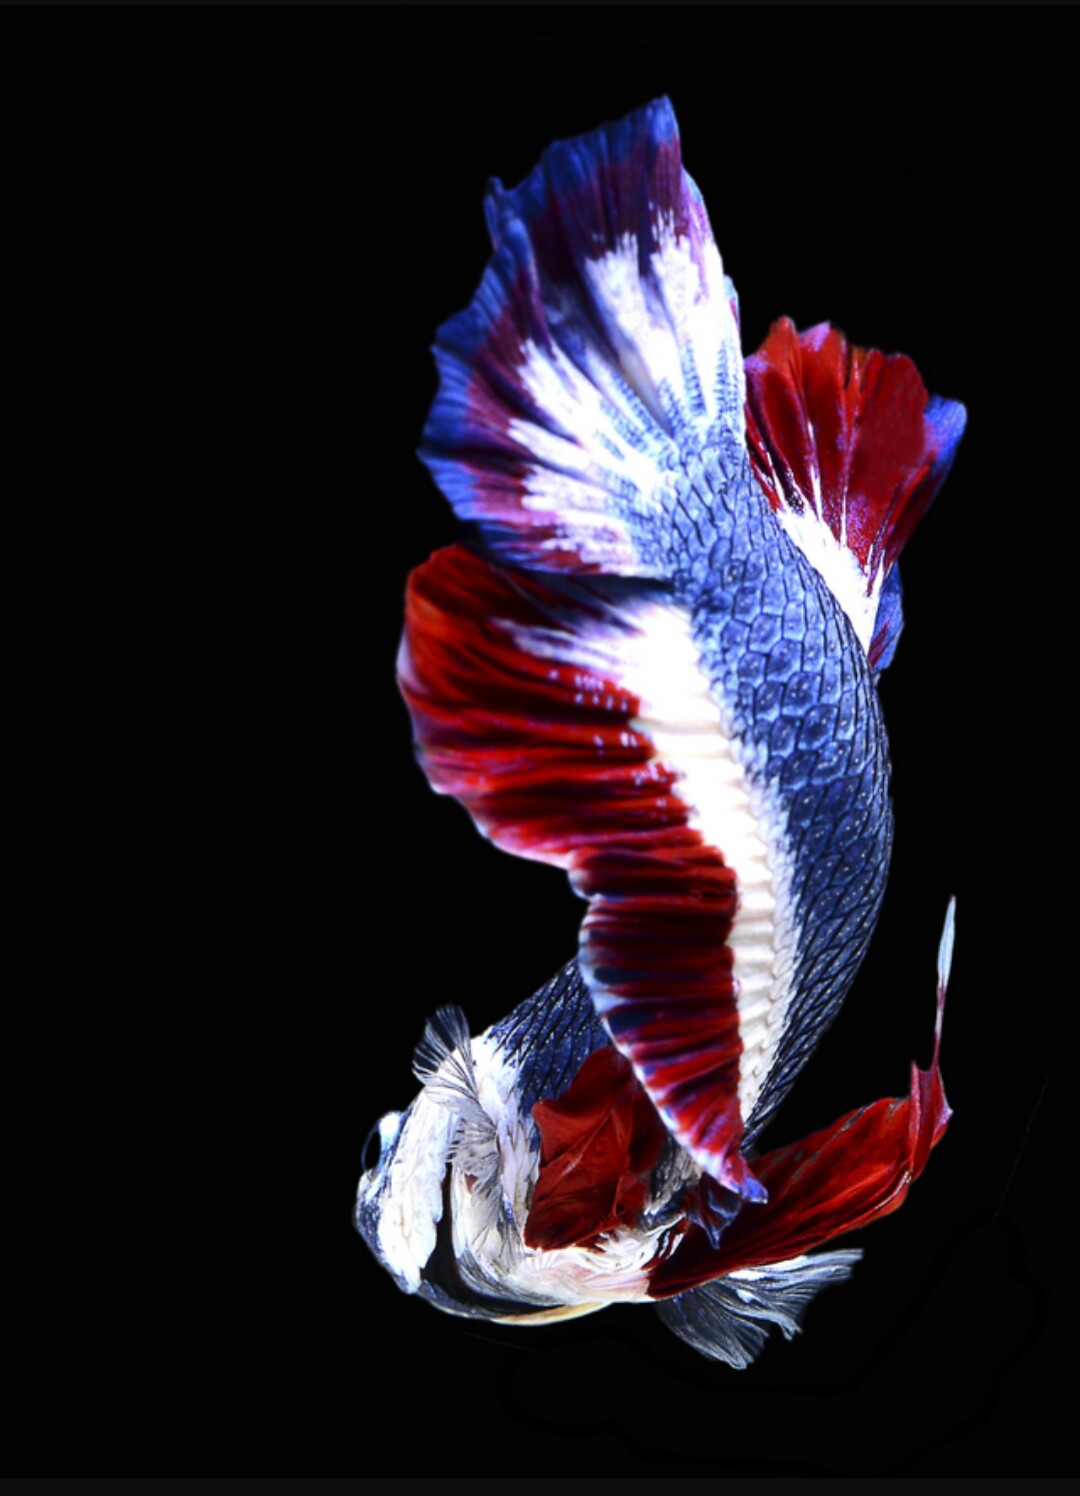  Ikan  Cupang  Termahal Dan Terlangka di Dunia Cupang  Sehat